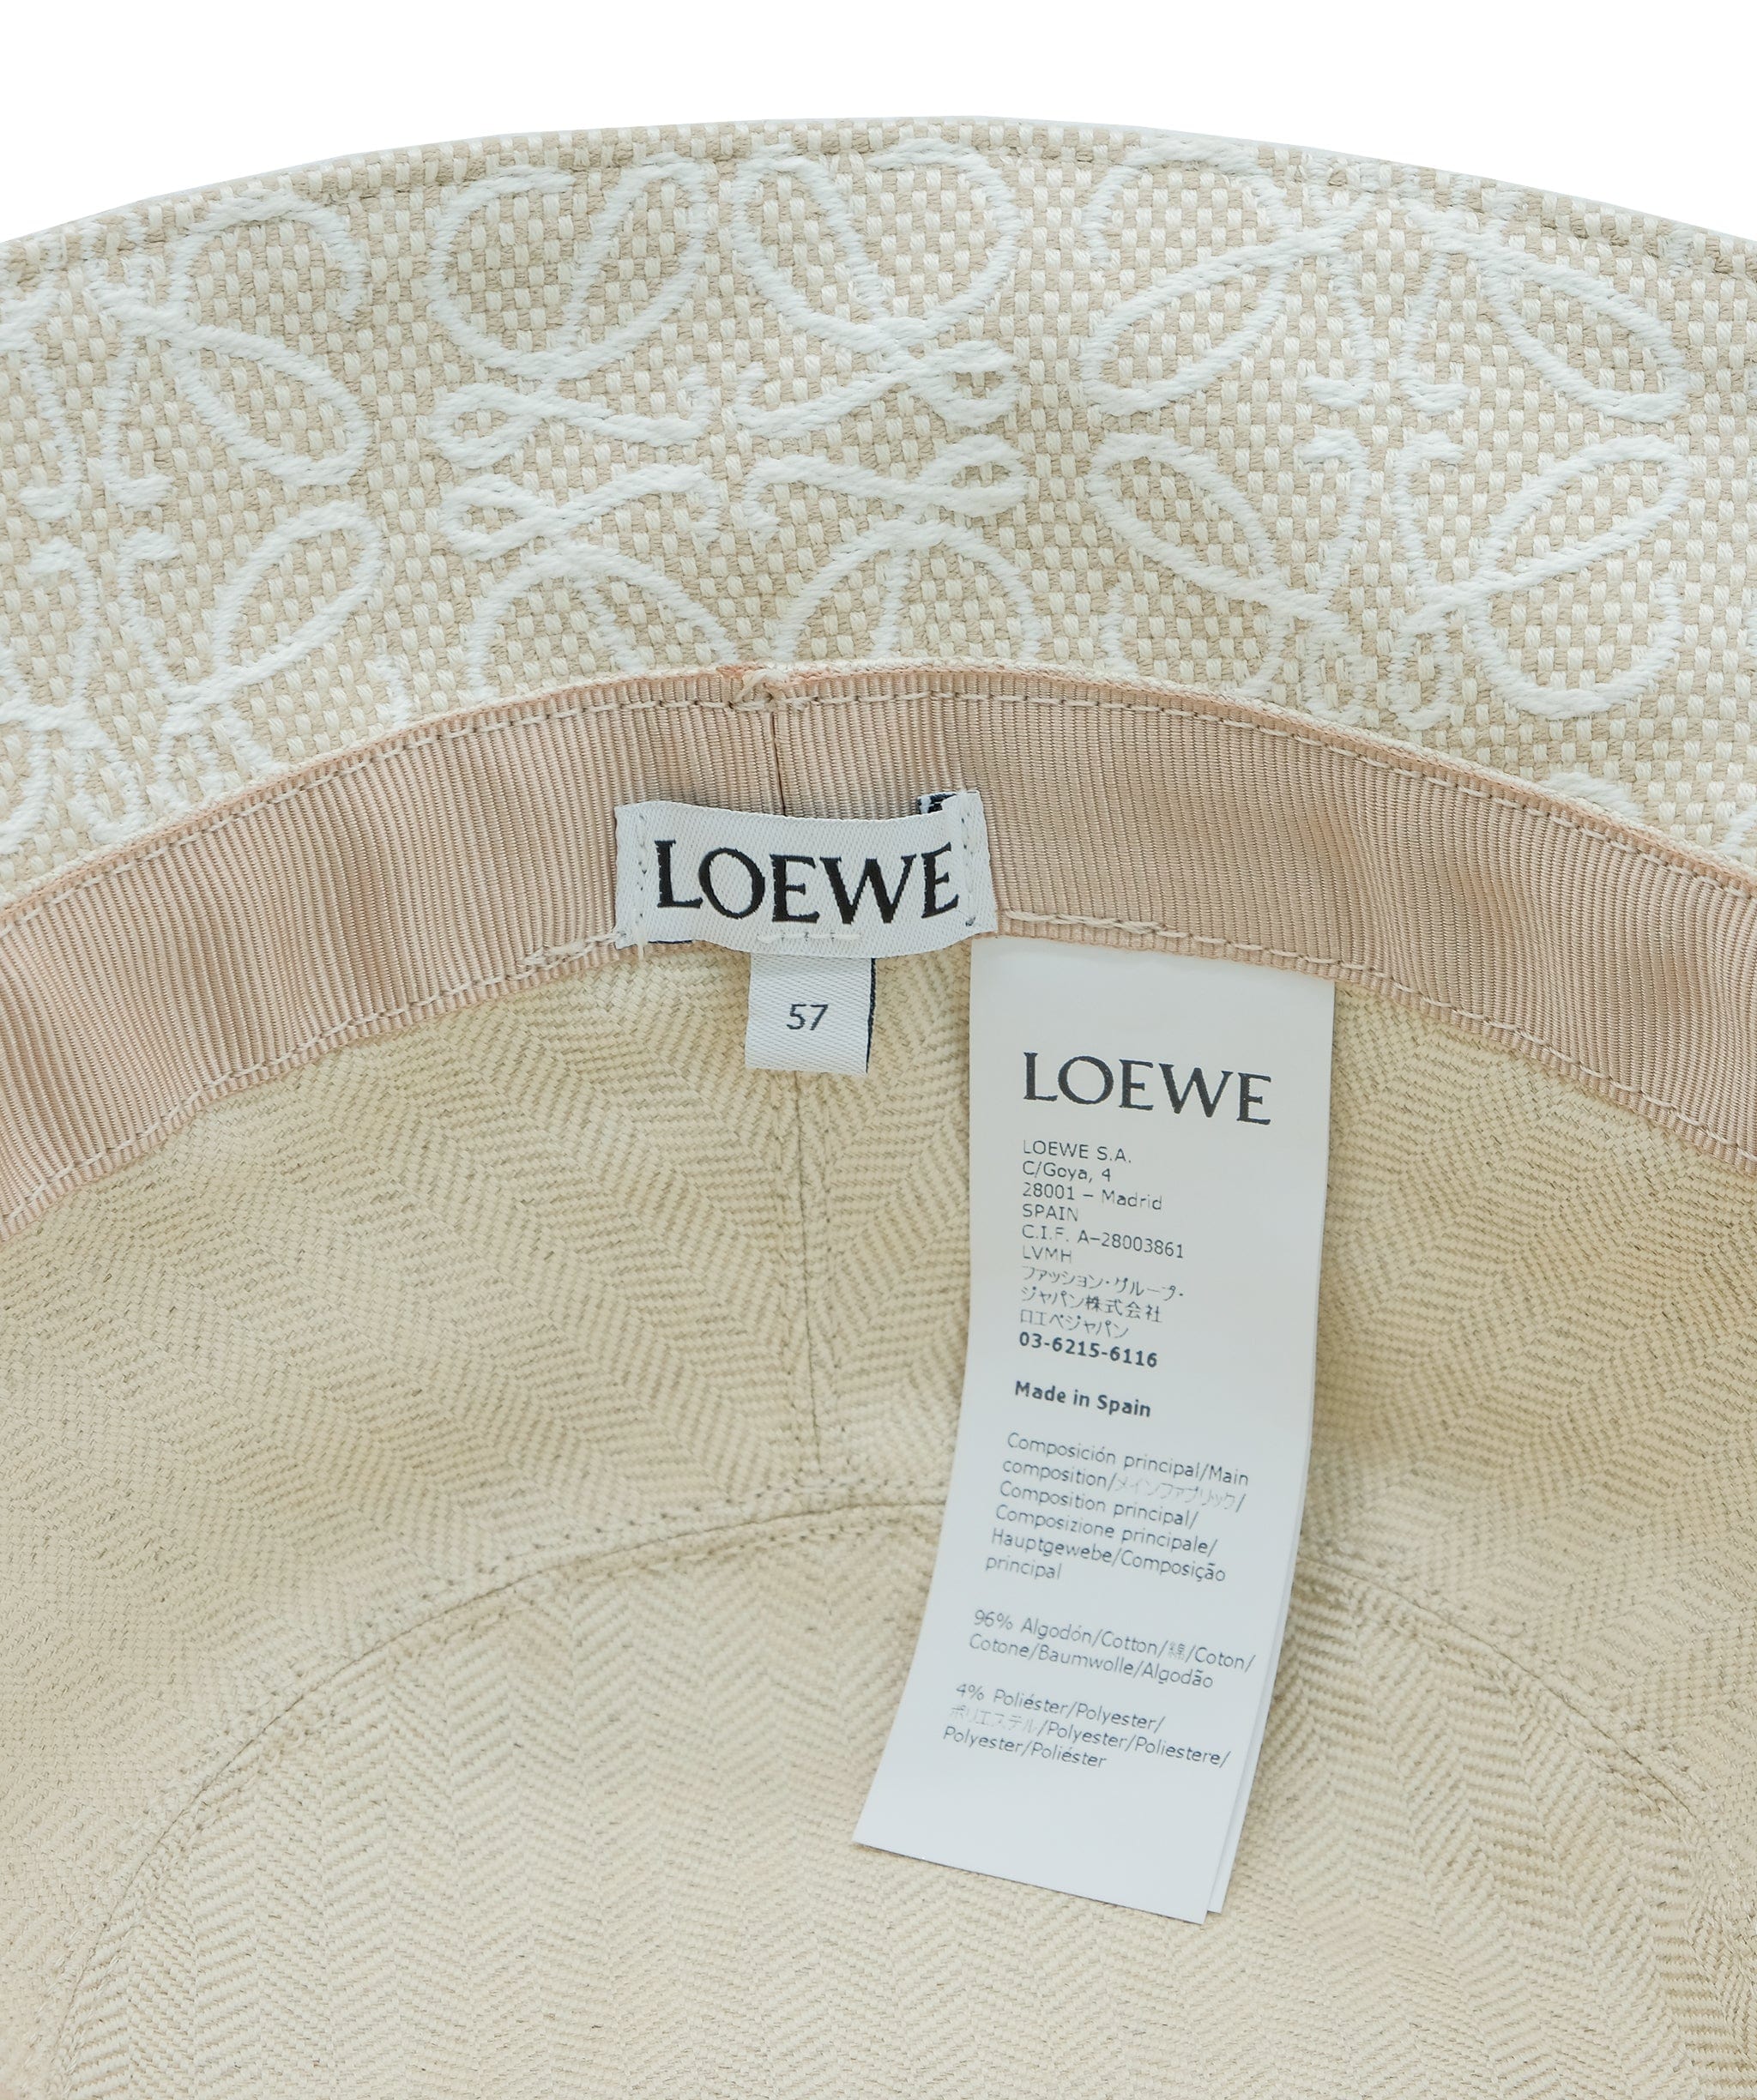 Loewe Loewe Bucket Hat RJC2692